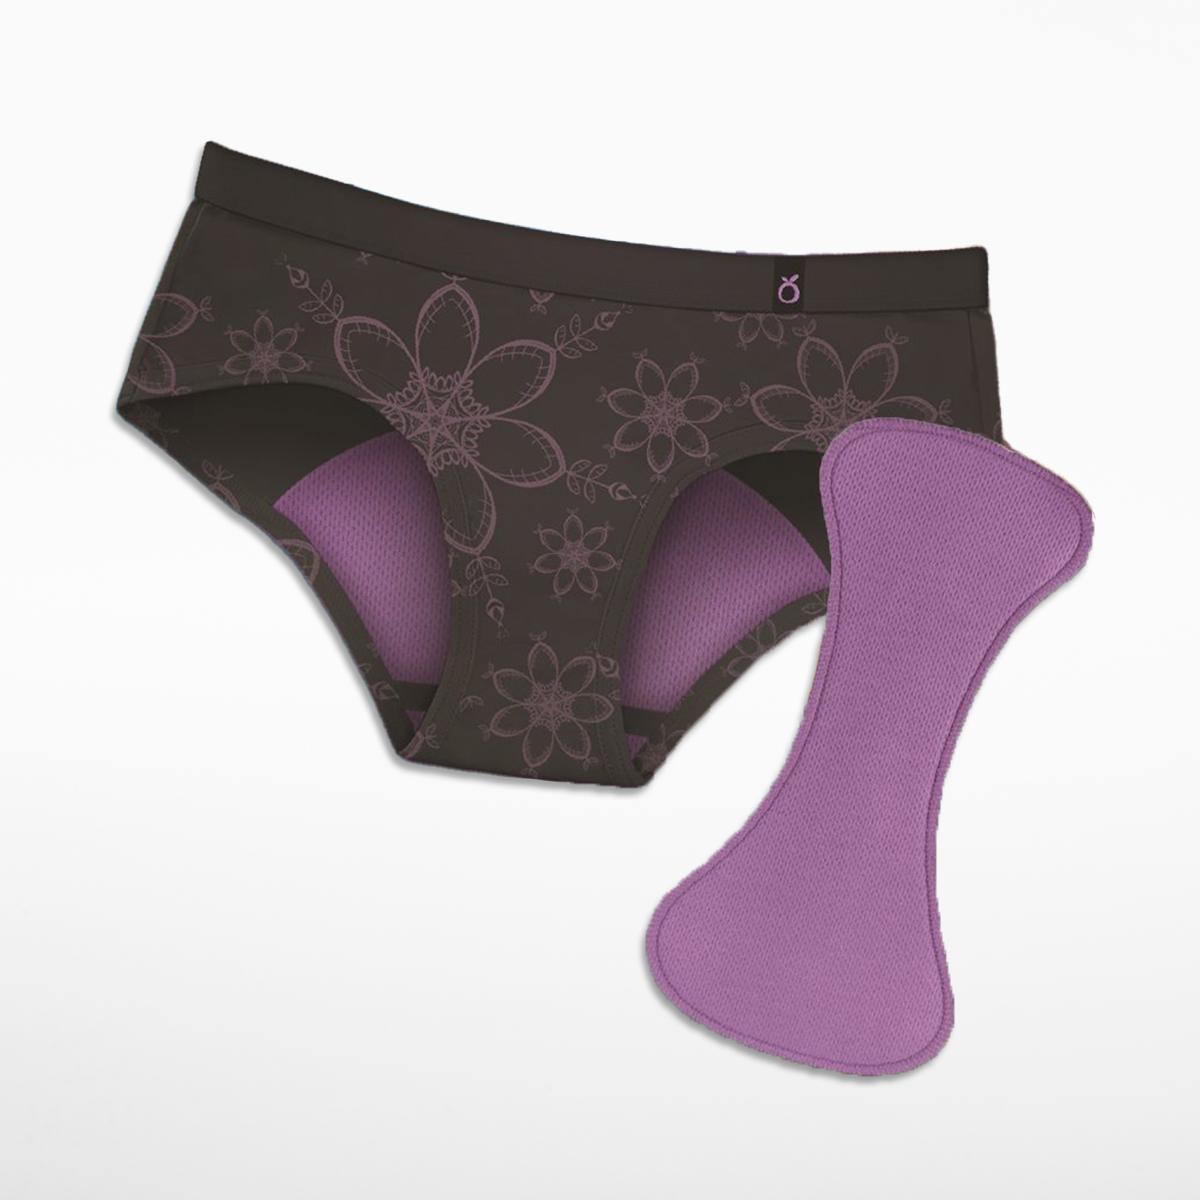 Öko Flow - Removable Inserts For Period Underwear